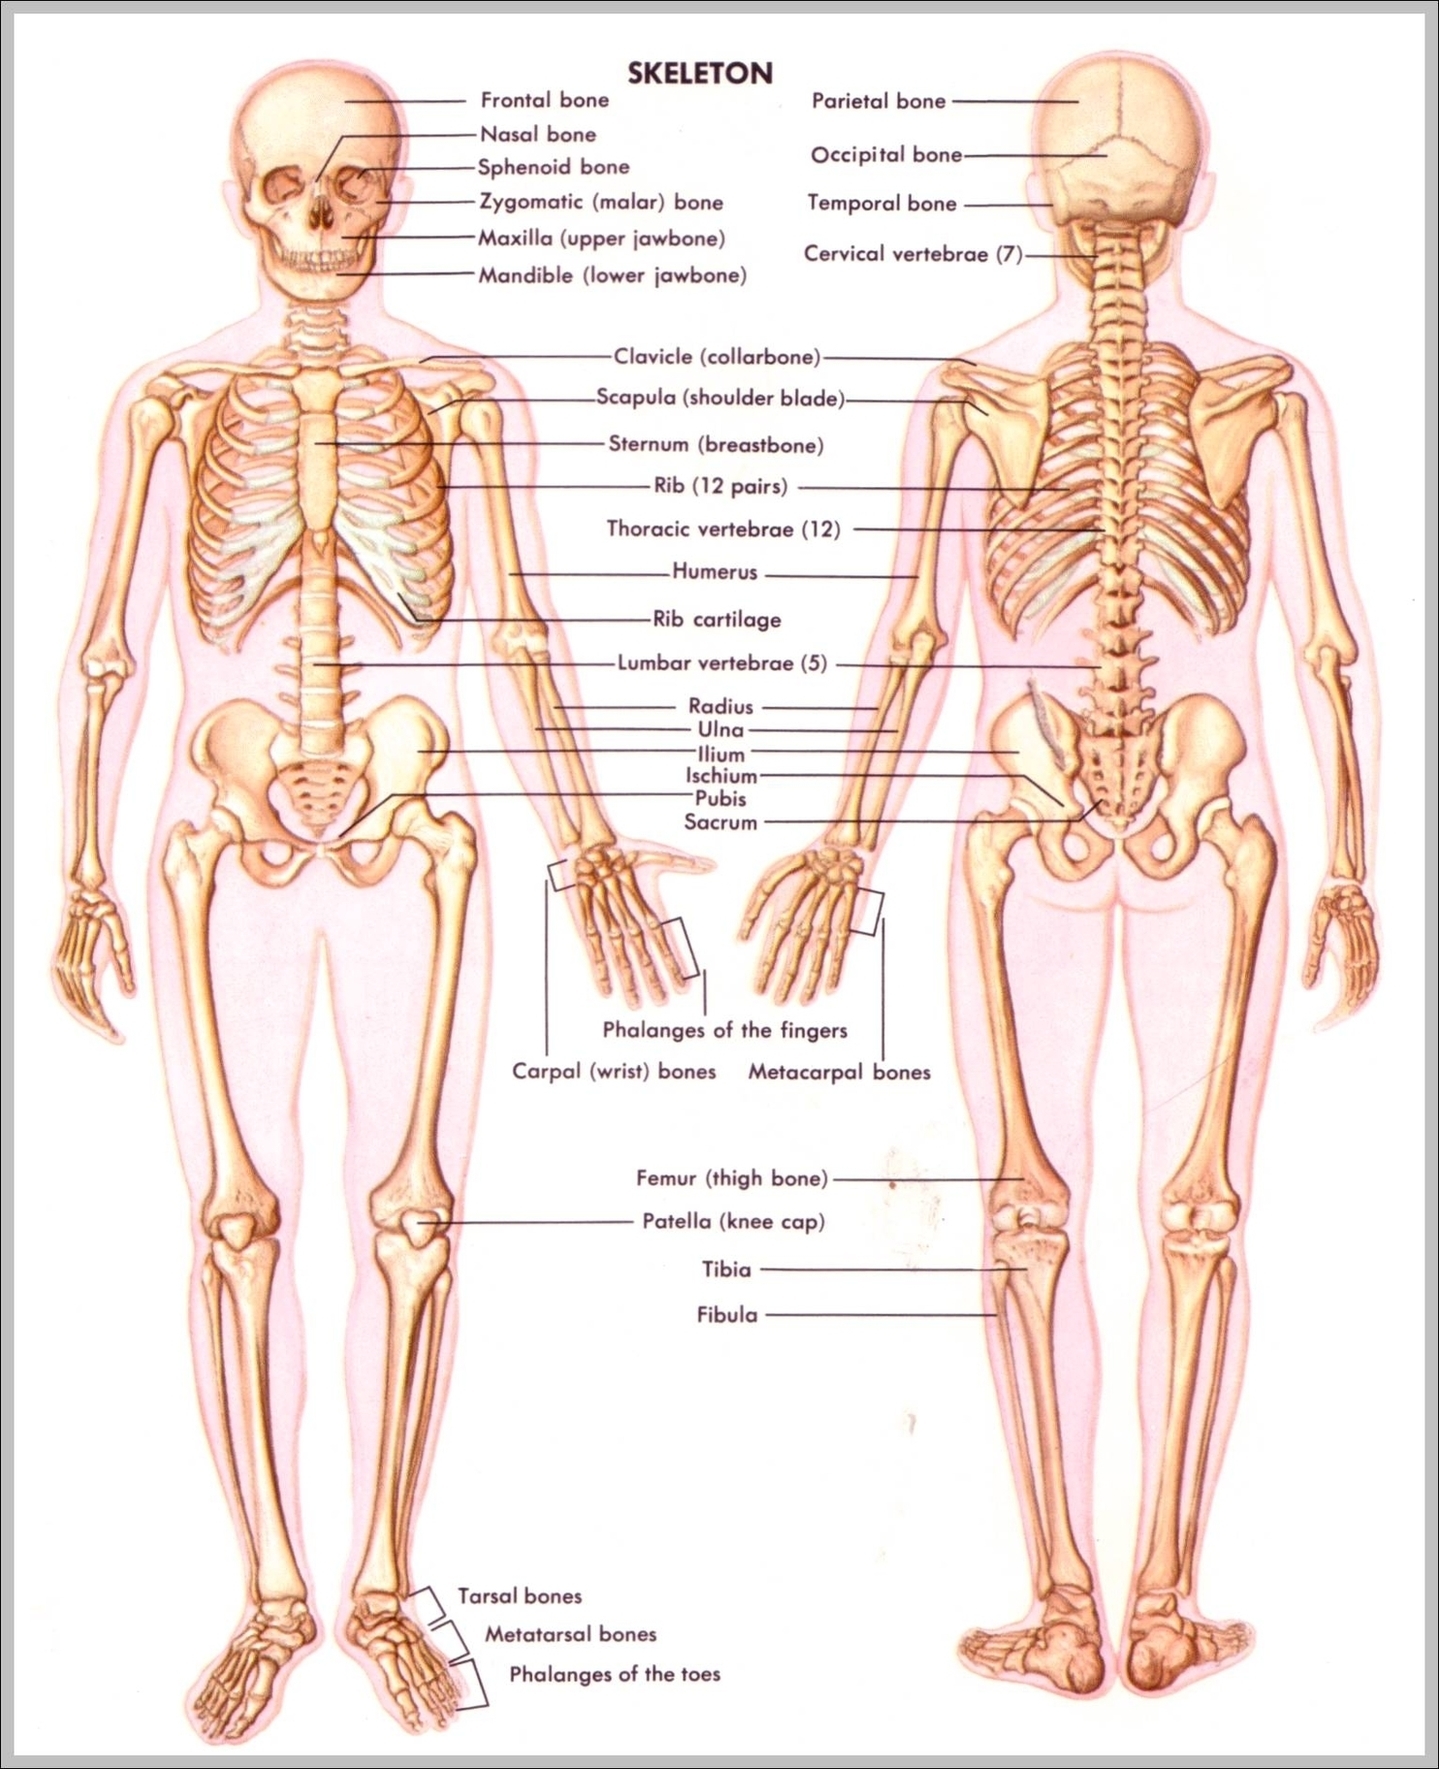 Image Of Skeletal System Image